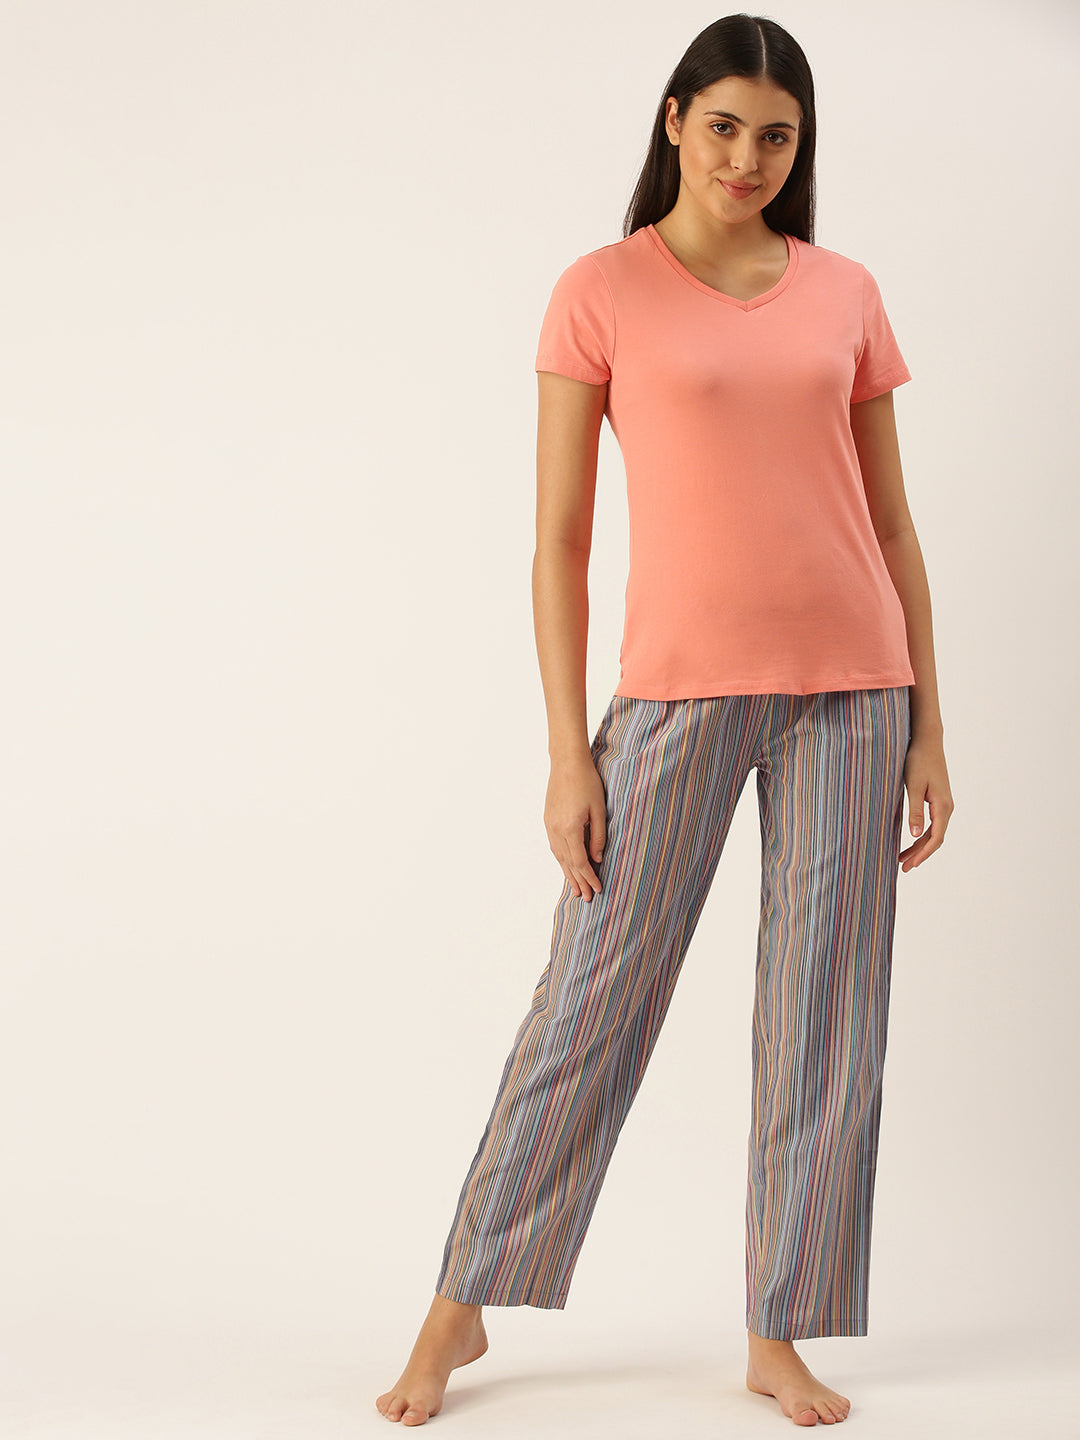 Multi Colored Striped Cotton Pyjamas